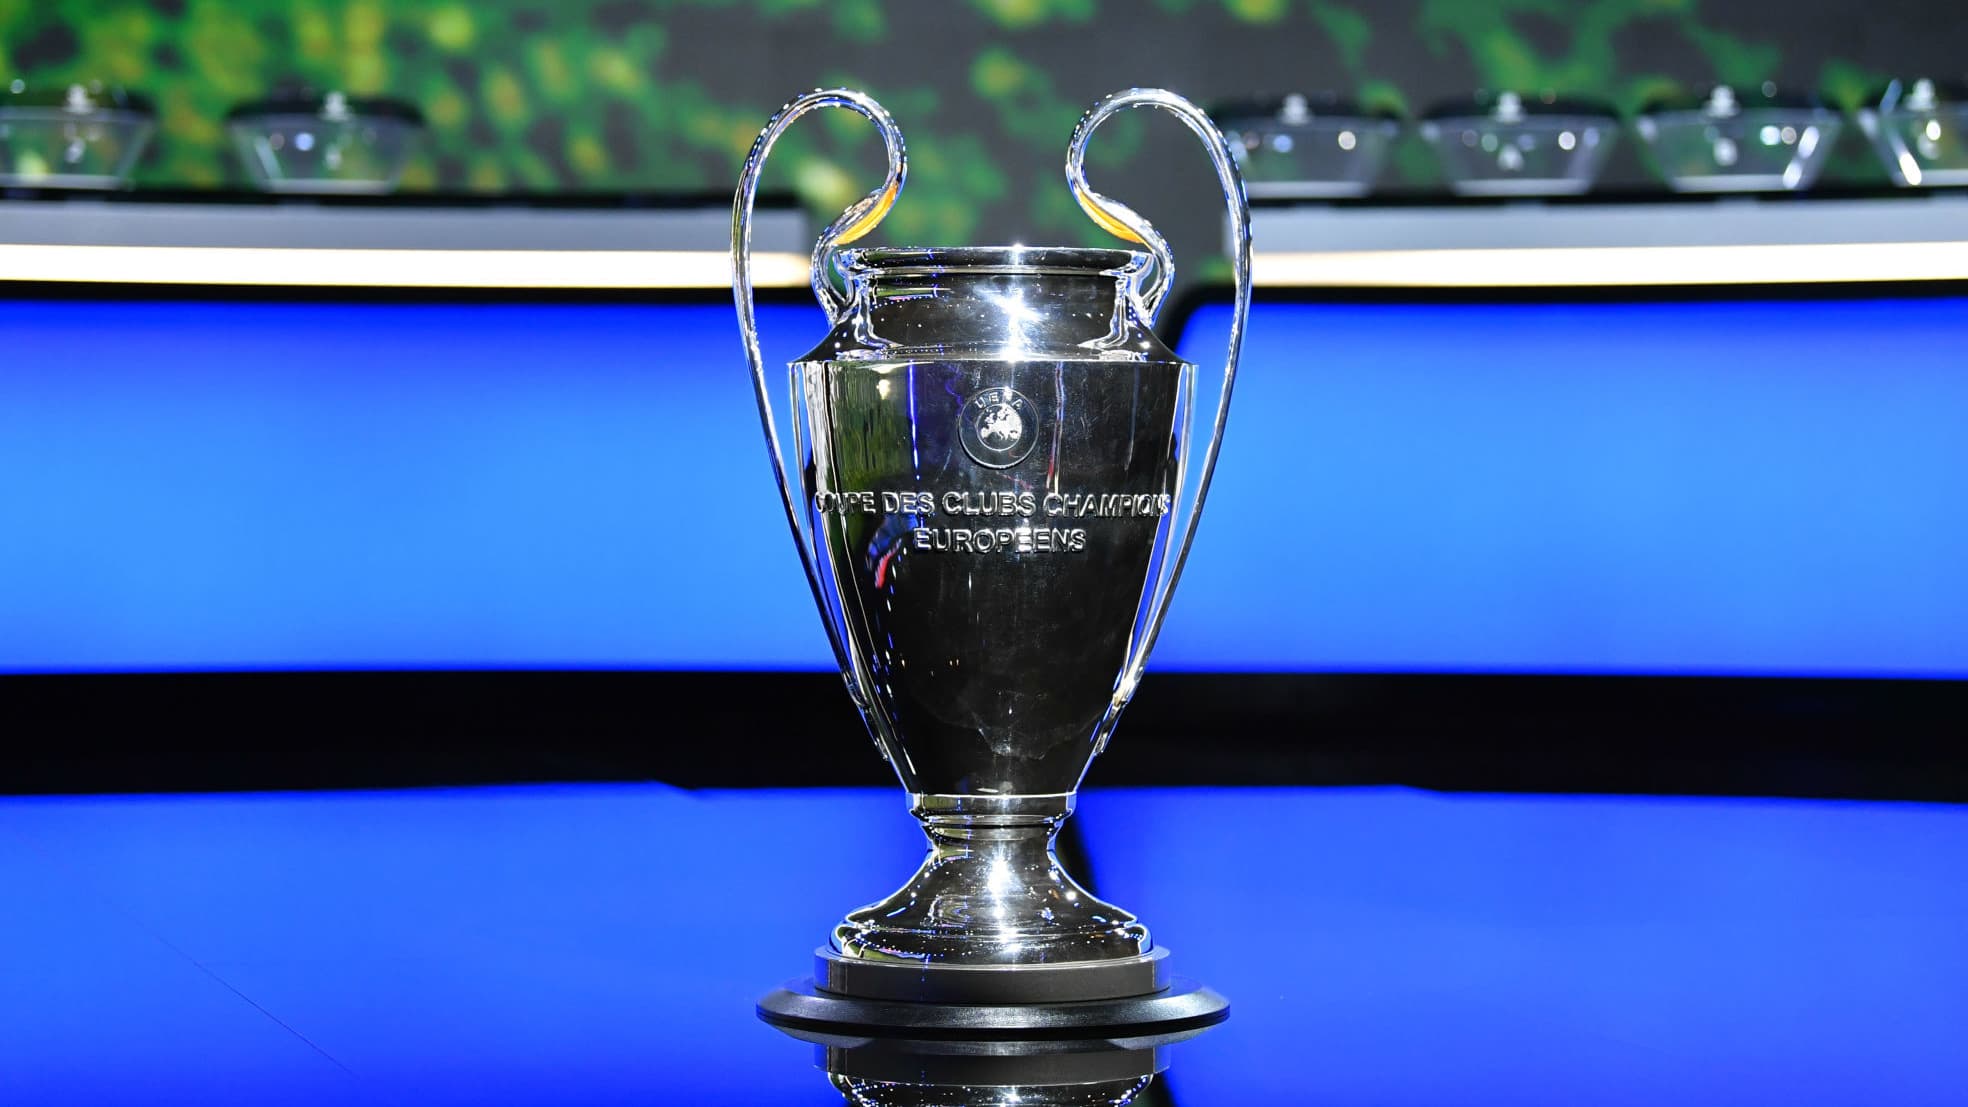 LDC (M)  Le nouveau trophée de la Ligue des Champions - HandNews